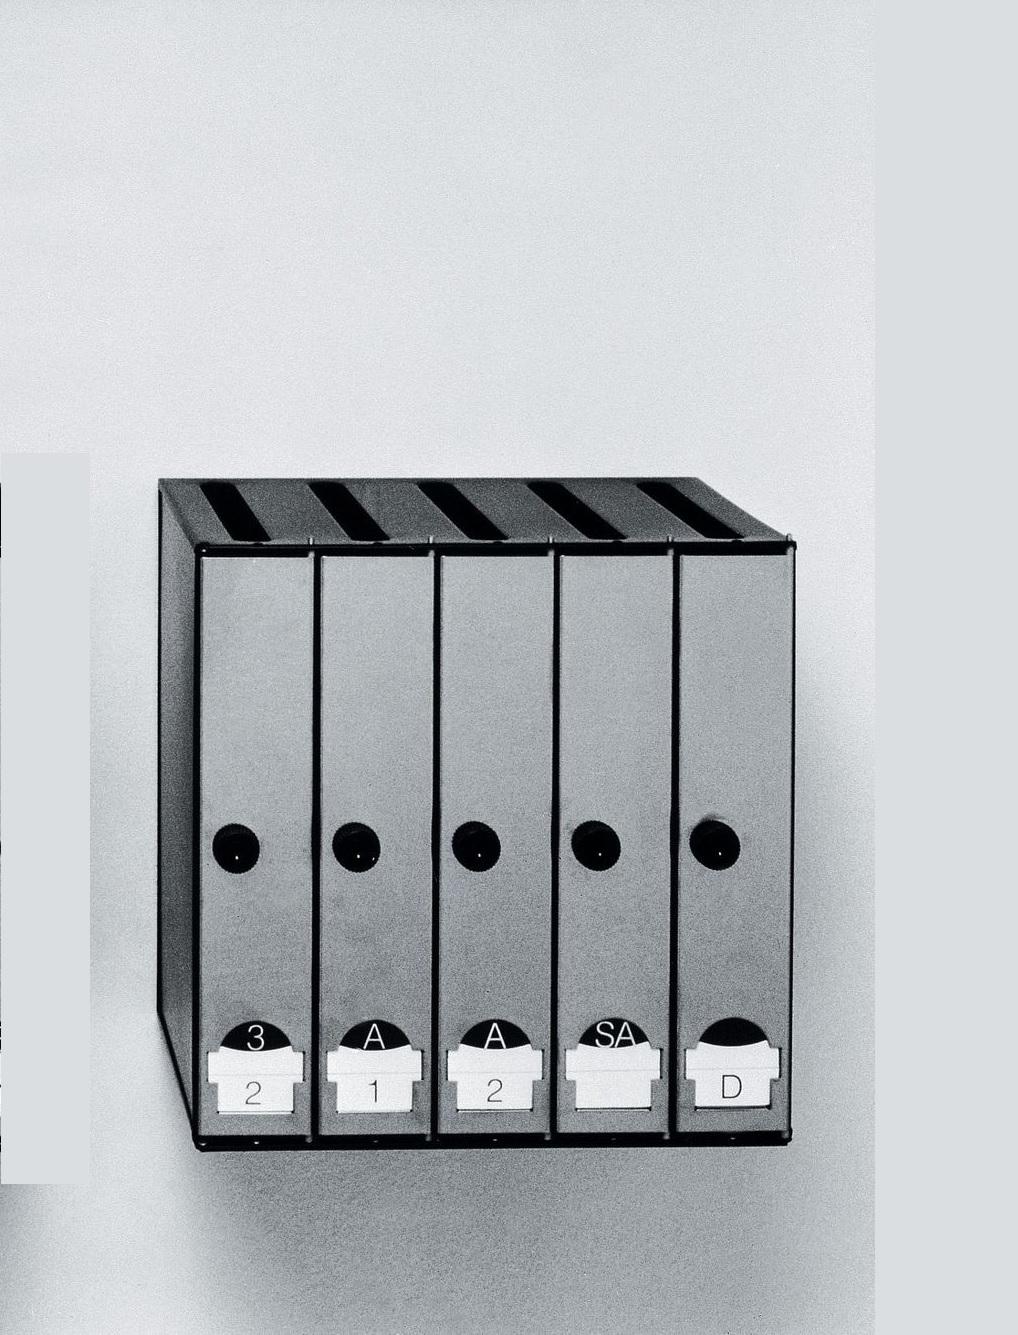 5 Briefkasten von Lluis Clotet & Oscar Tusquets 
Abmessungen: D 32 x B 40 x H 40 cm 
MATERIALIEN: Aus Stahlblechen mit schwarzer Polyester-Pulverbeschichtung (RAL 9005). Türen aus poliertem Edelstahl mit einem transparenten Acrylfenster und weißer